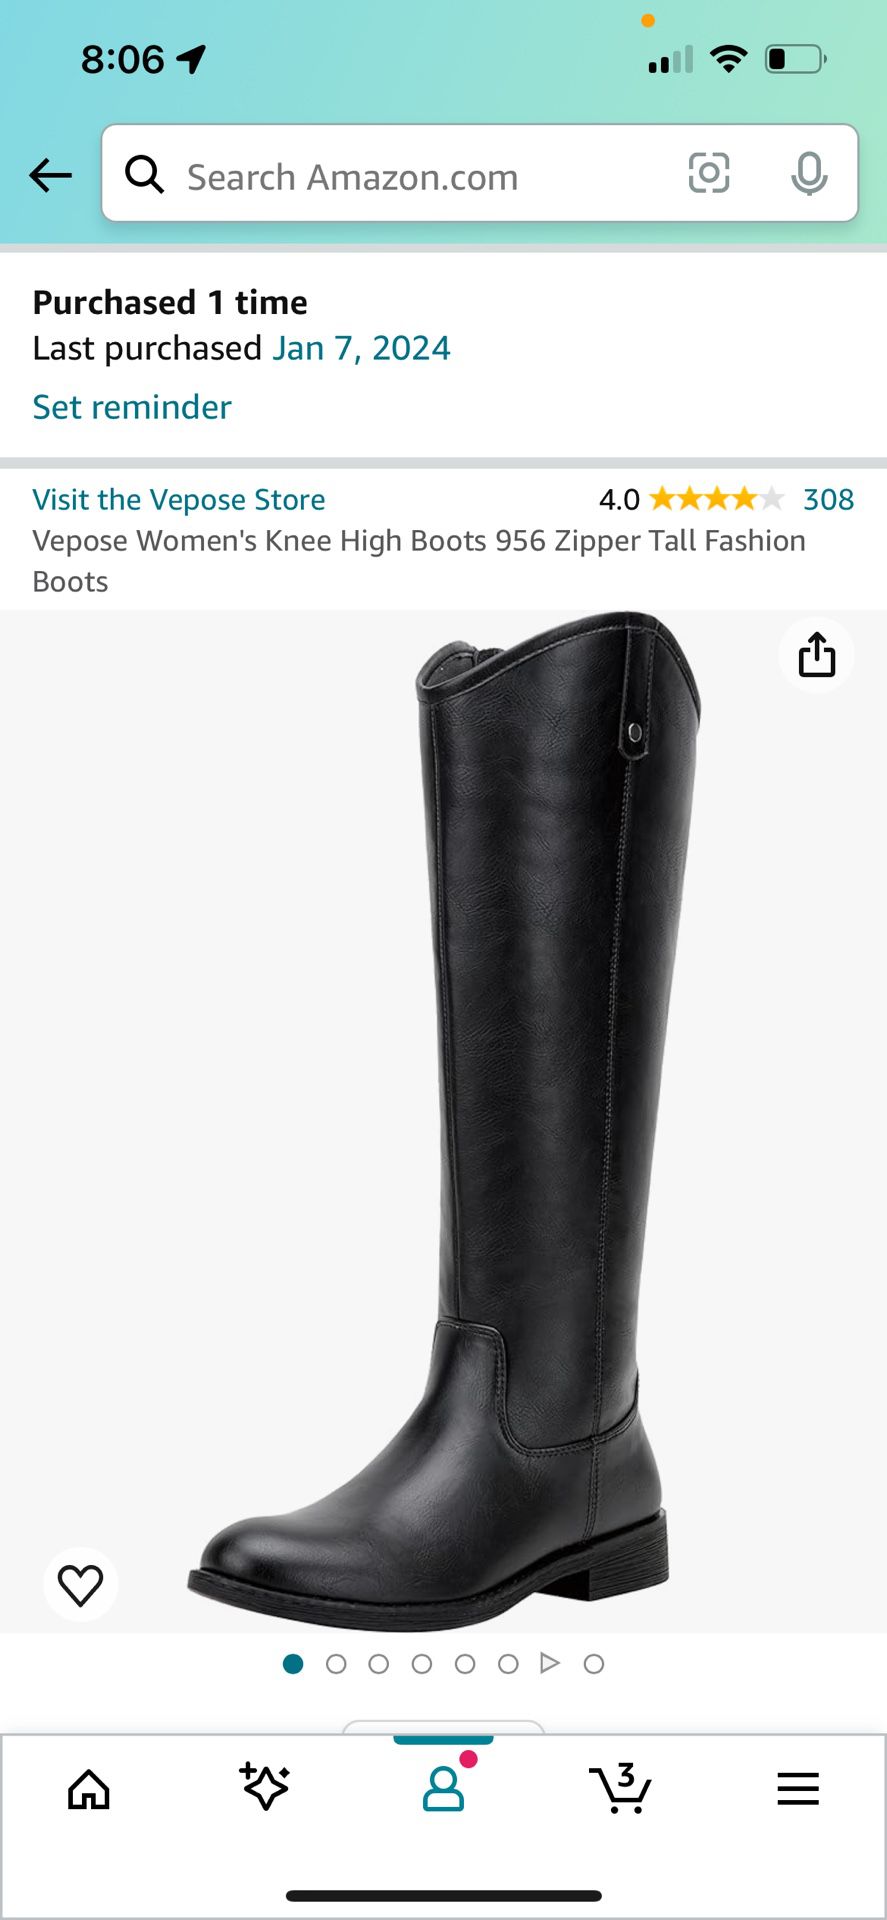 Vepose Women's Knee High Boots 956 Zipper Tall Fashion Boots